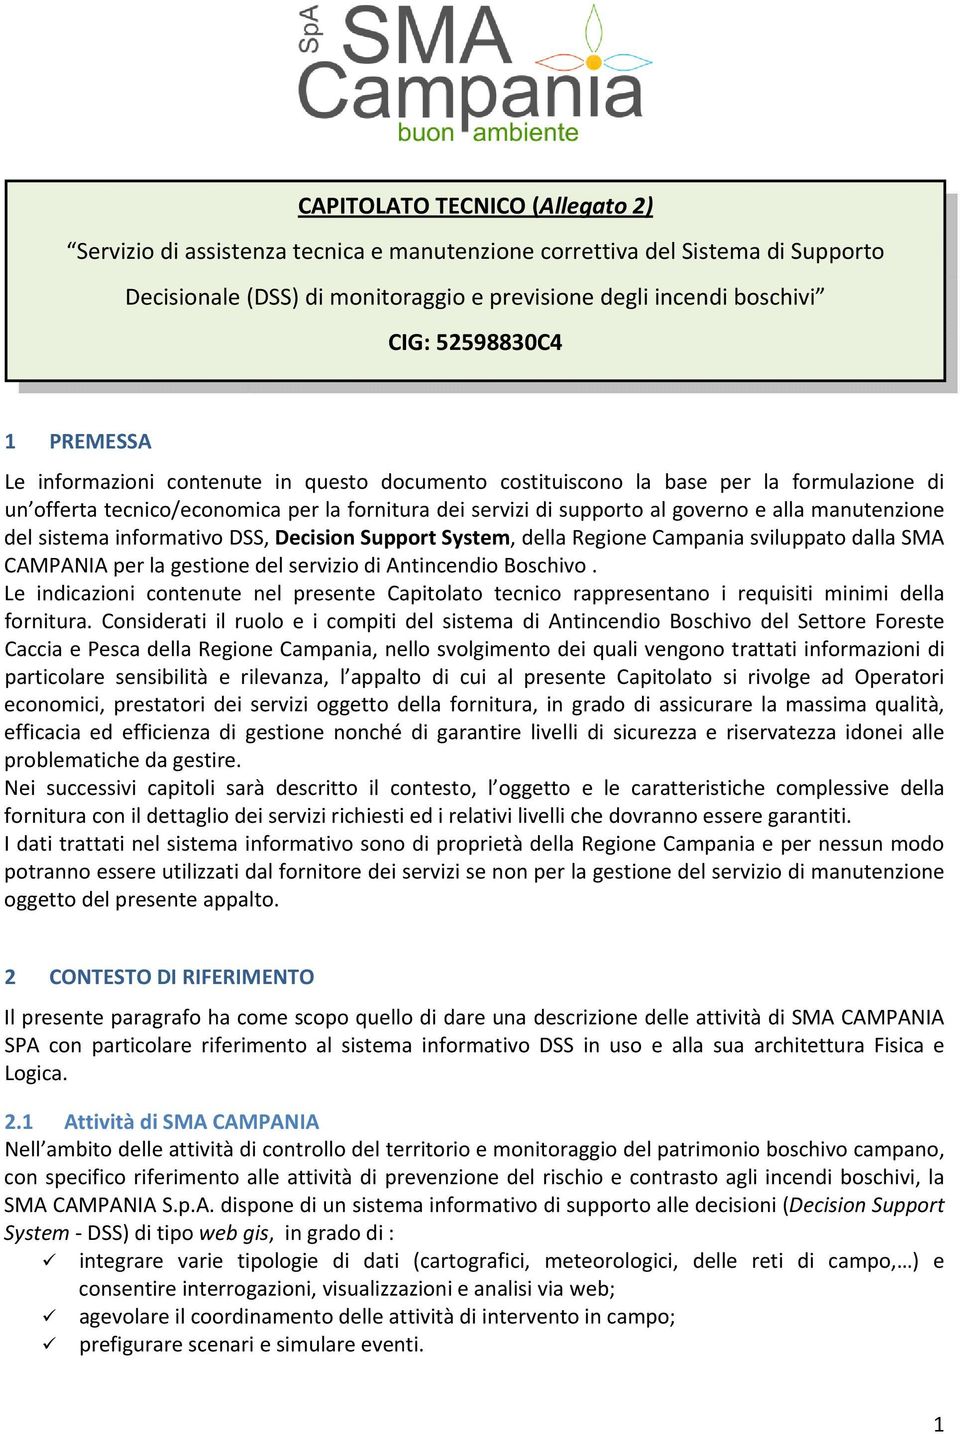 manutenzione del sistema informativo DSS, Decision Support System, della Regione Campania sviluppato dalla SMA CAMPANIA per la gestione del servizio di Antincendio Boschivo.